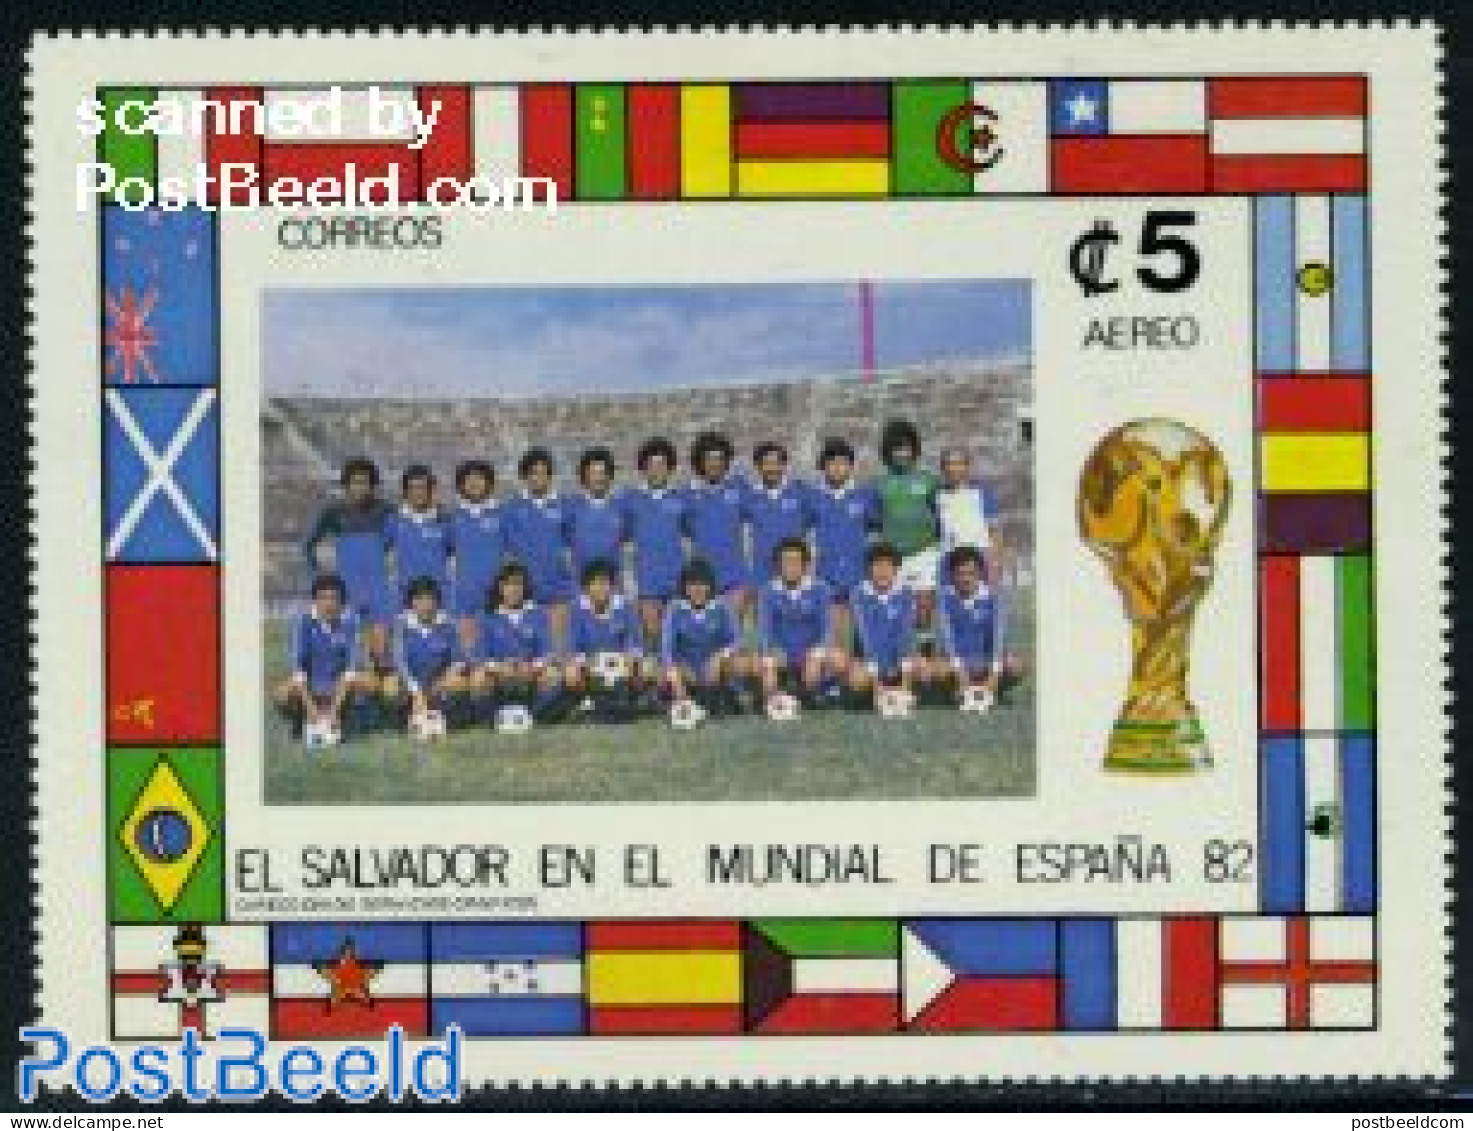 El Salvador 1982 World Cup Football S/s, Mint NH, History - Sport - Flags - Football - El Salvador